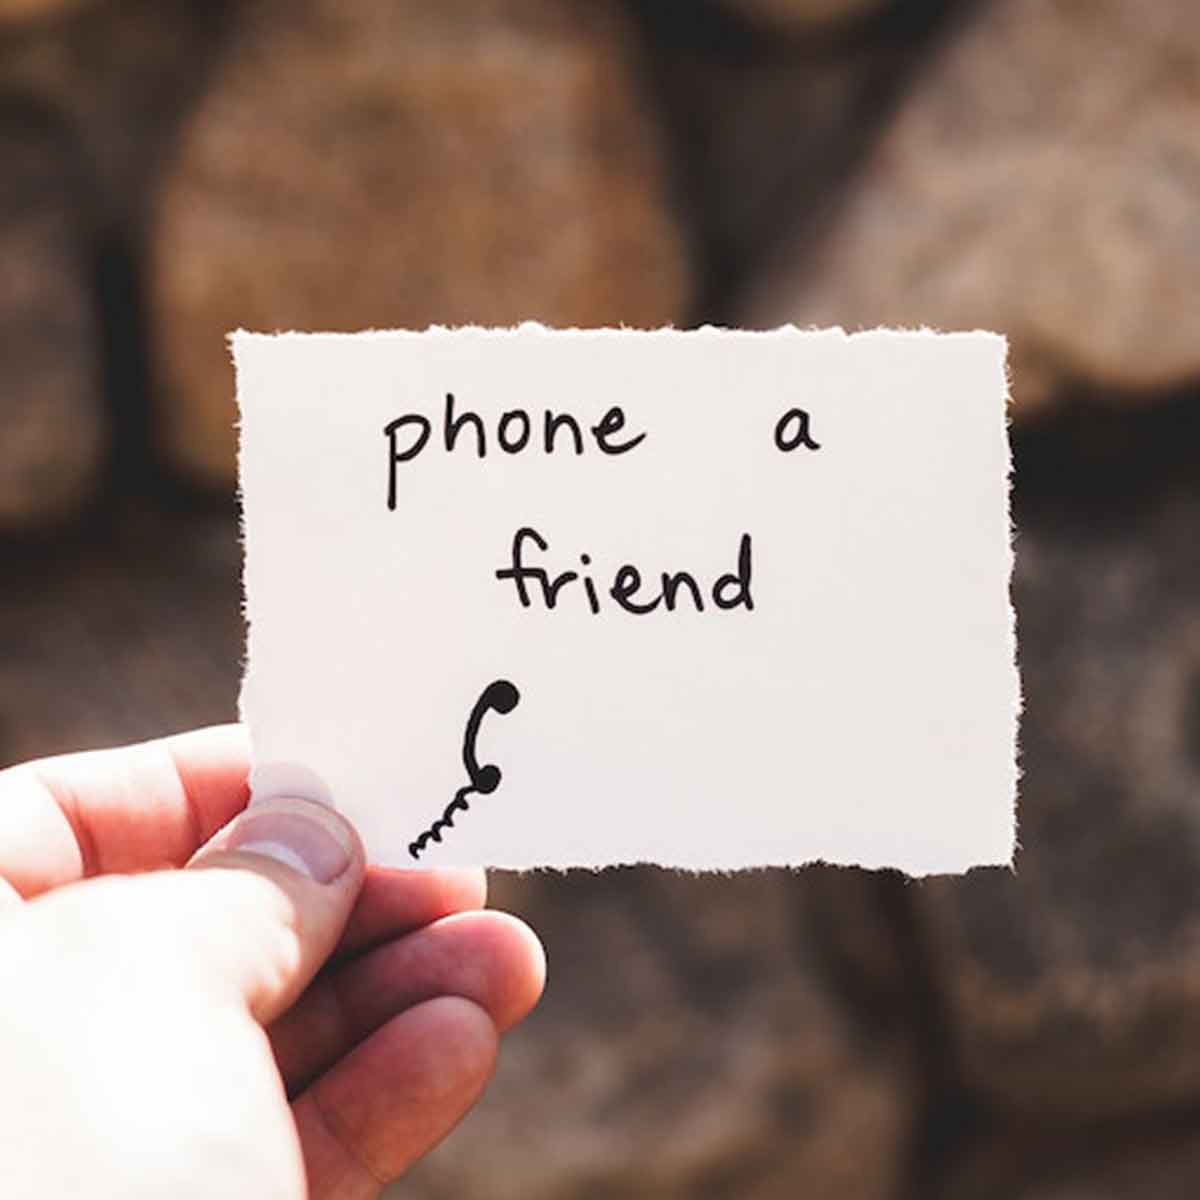 phone a friend